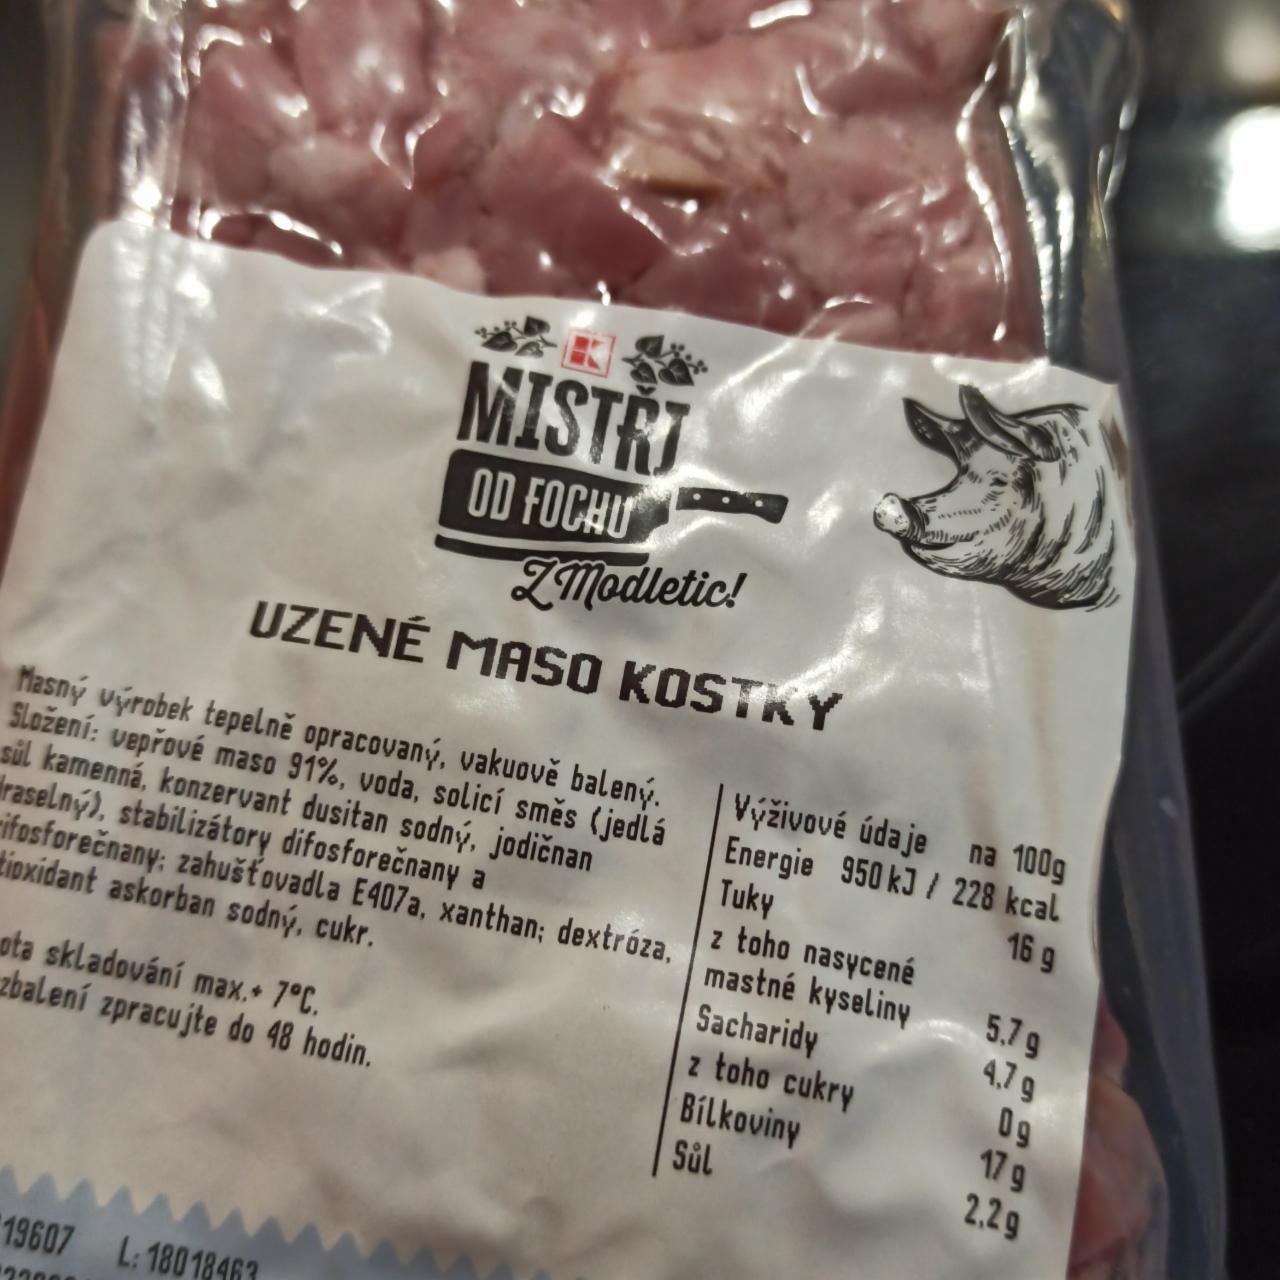 Fotografie - uzené maso kostky K-Mistři od fochu